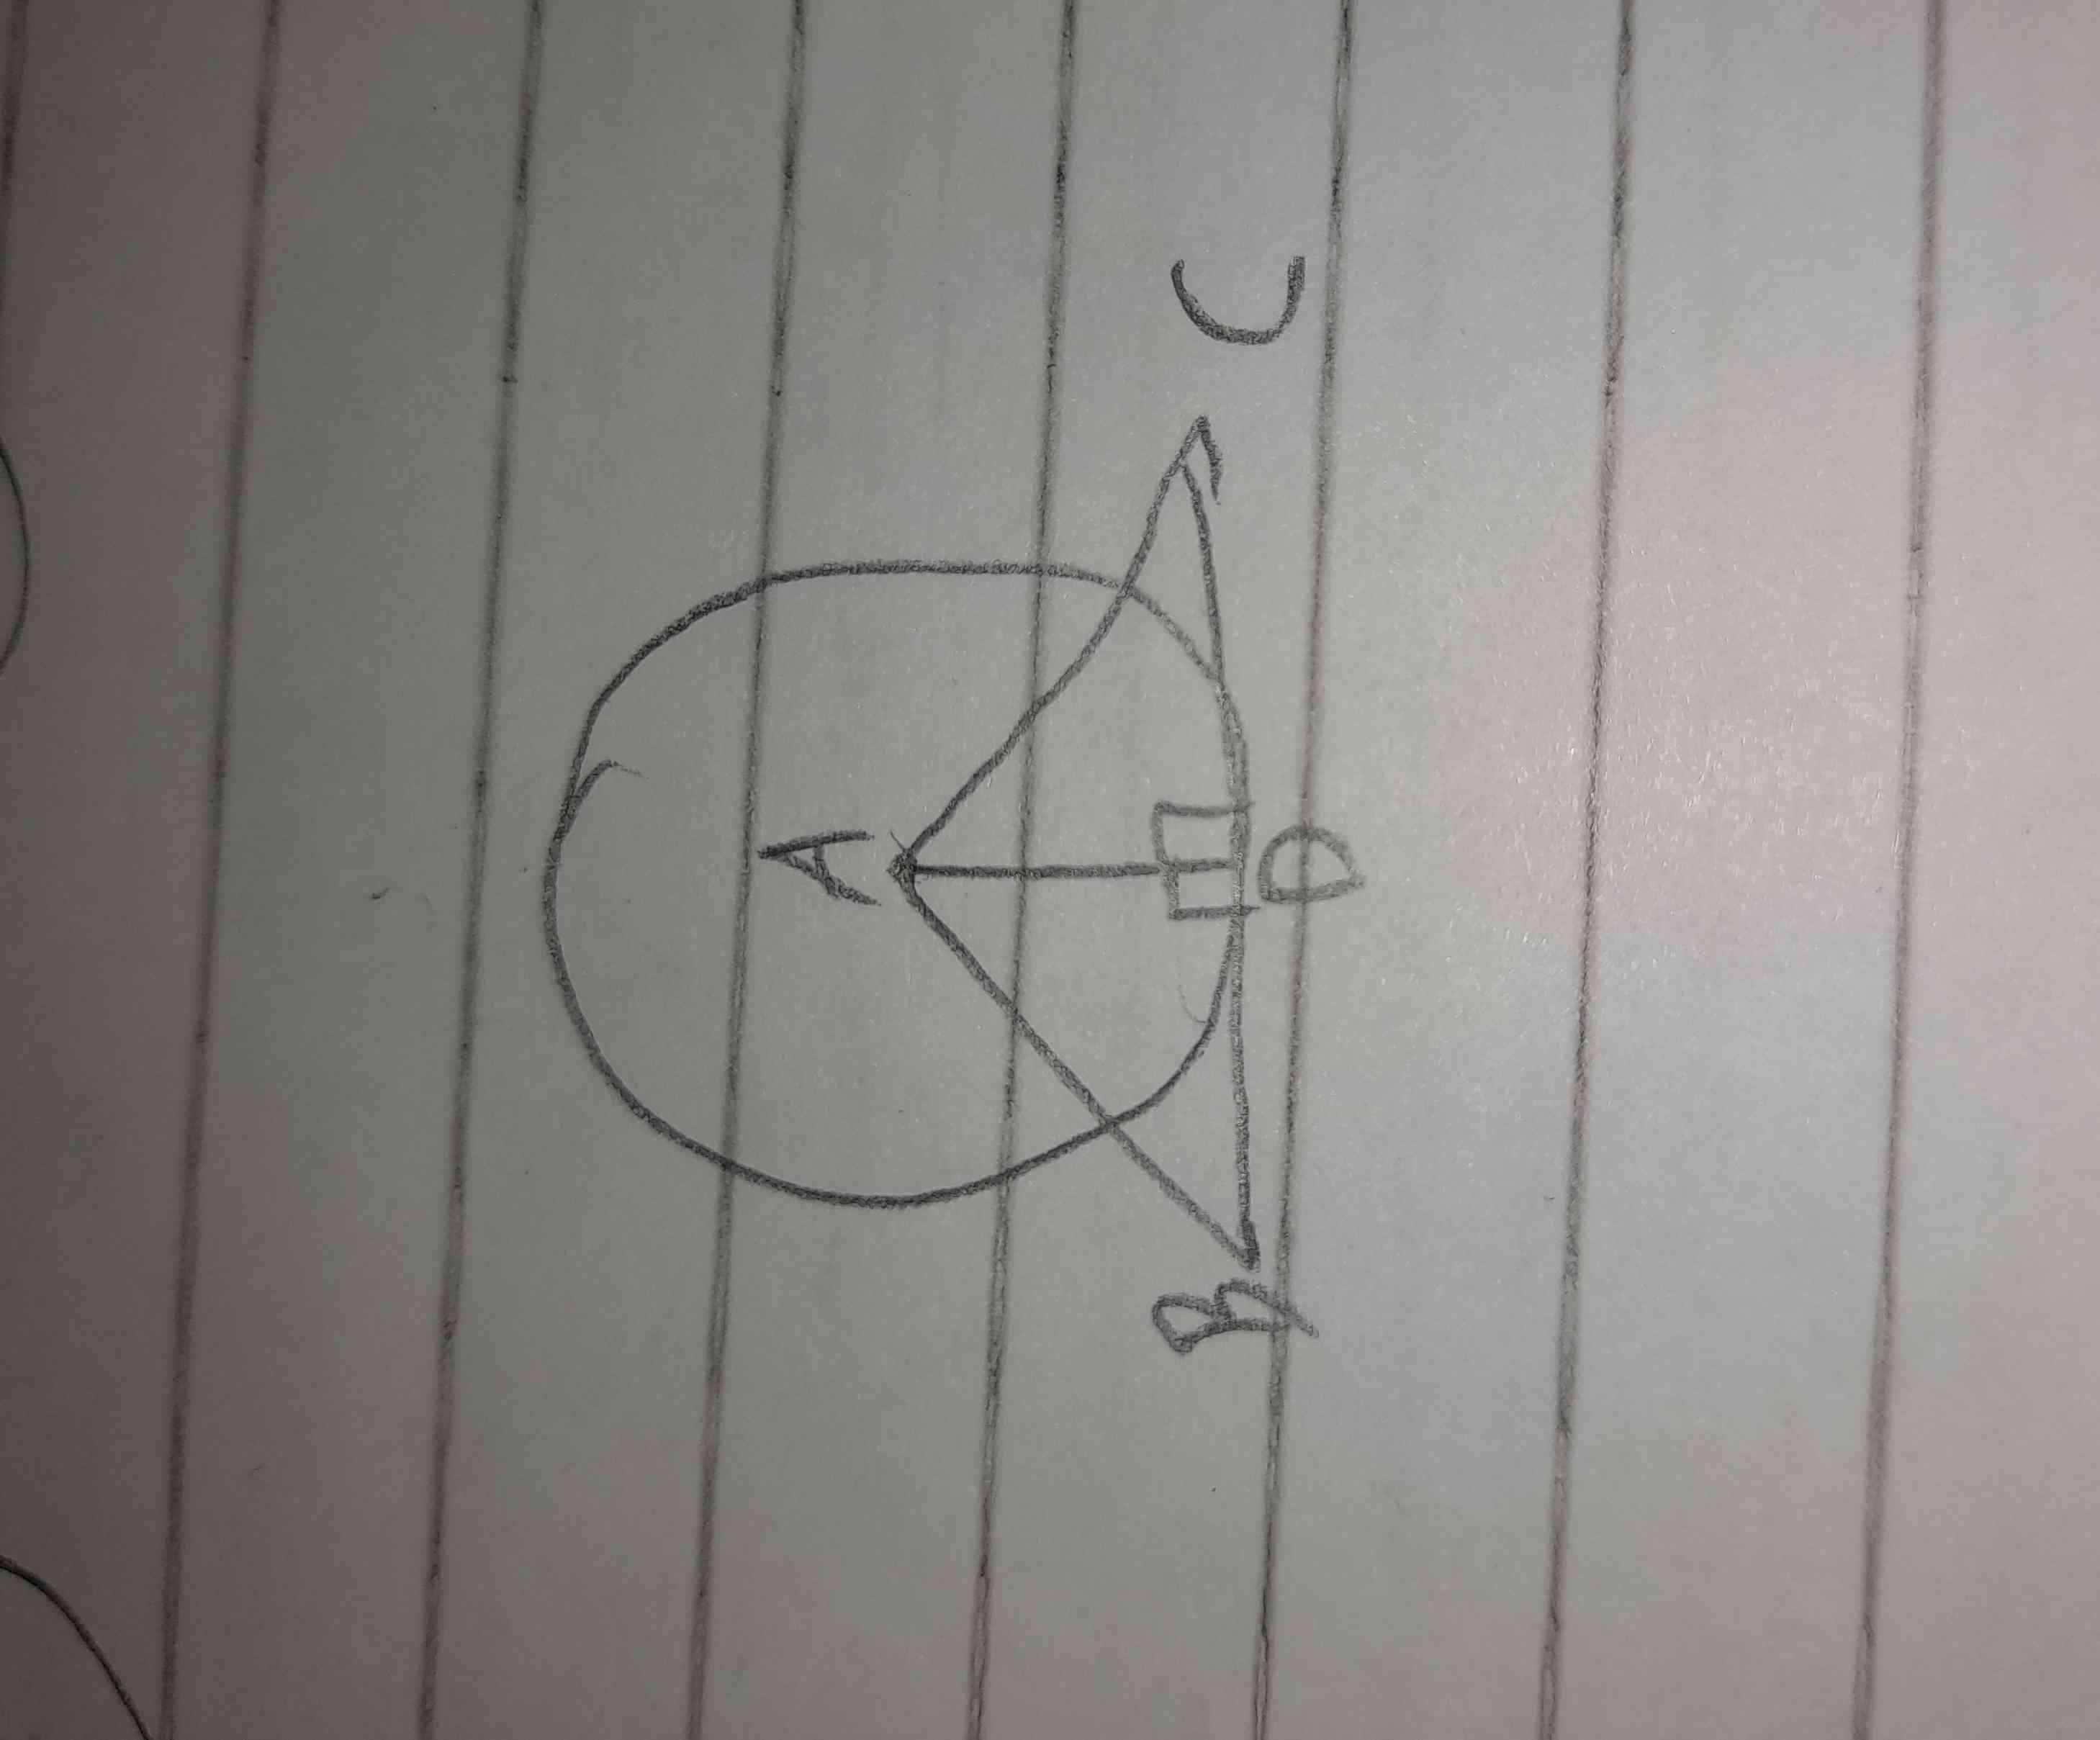 تاج میدم بگین
اون علامت عمود رو هم از خودم گذاشتم
اگر وتر AB را از روی دایره بکشیم و از مرکز دایره ، خطی را به آن عمود کنیم آن ها در چه حالتی با هم خم نهشت هستند؟